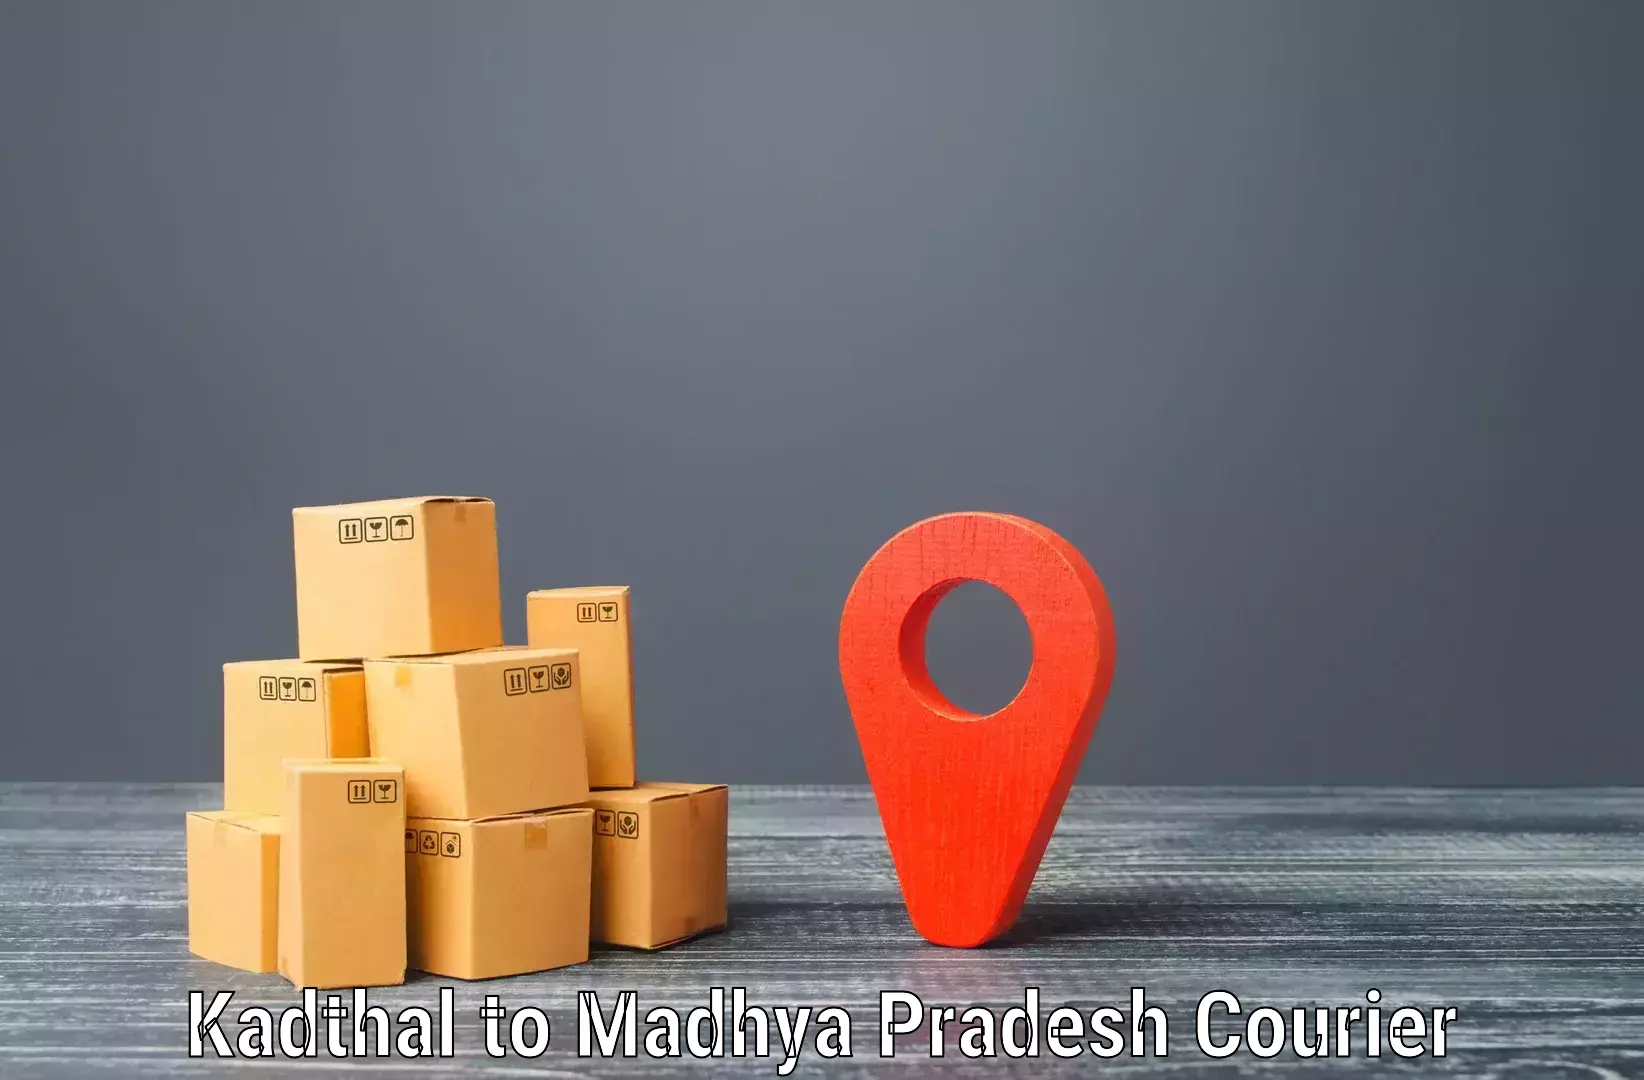 Reliable shipping partners Kadthal to Manasa